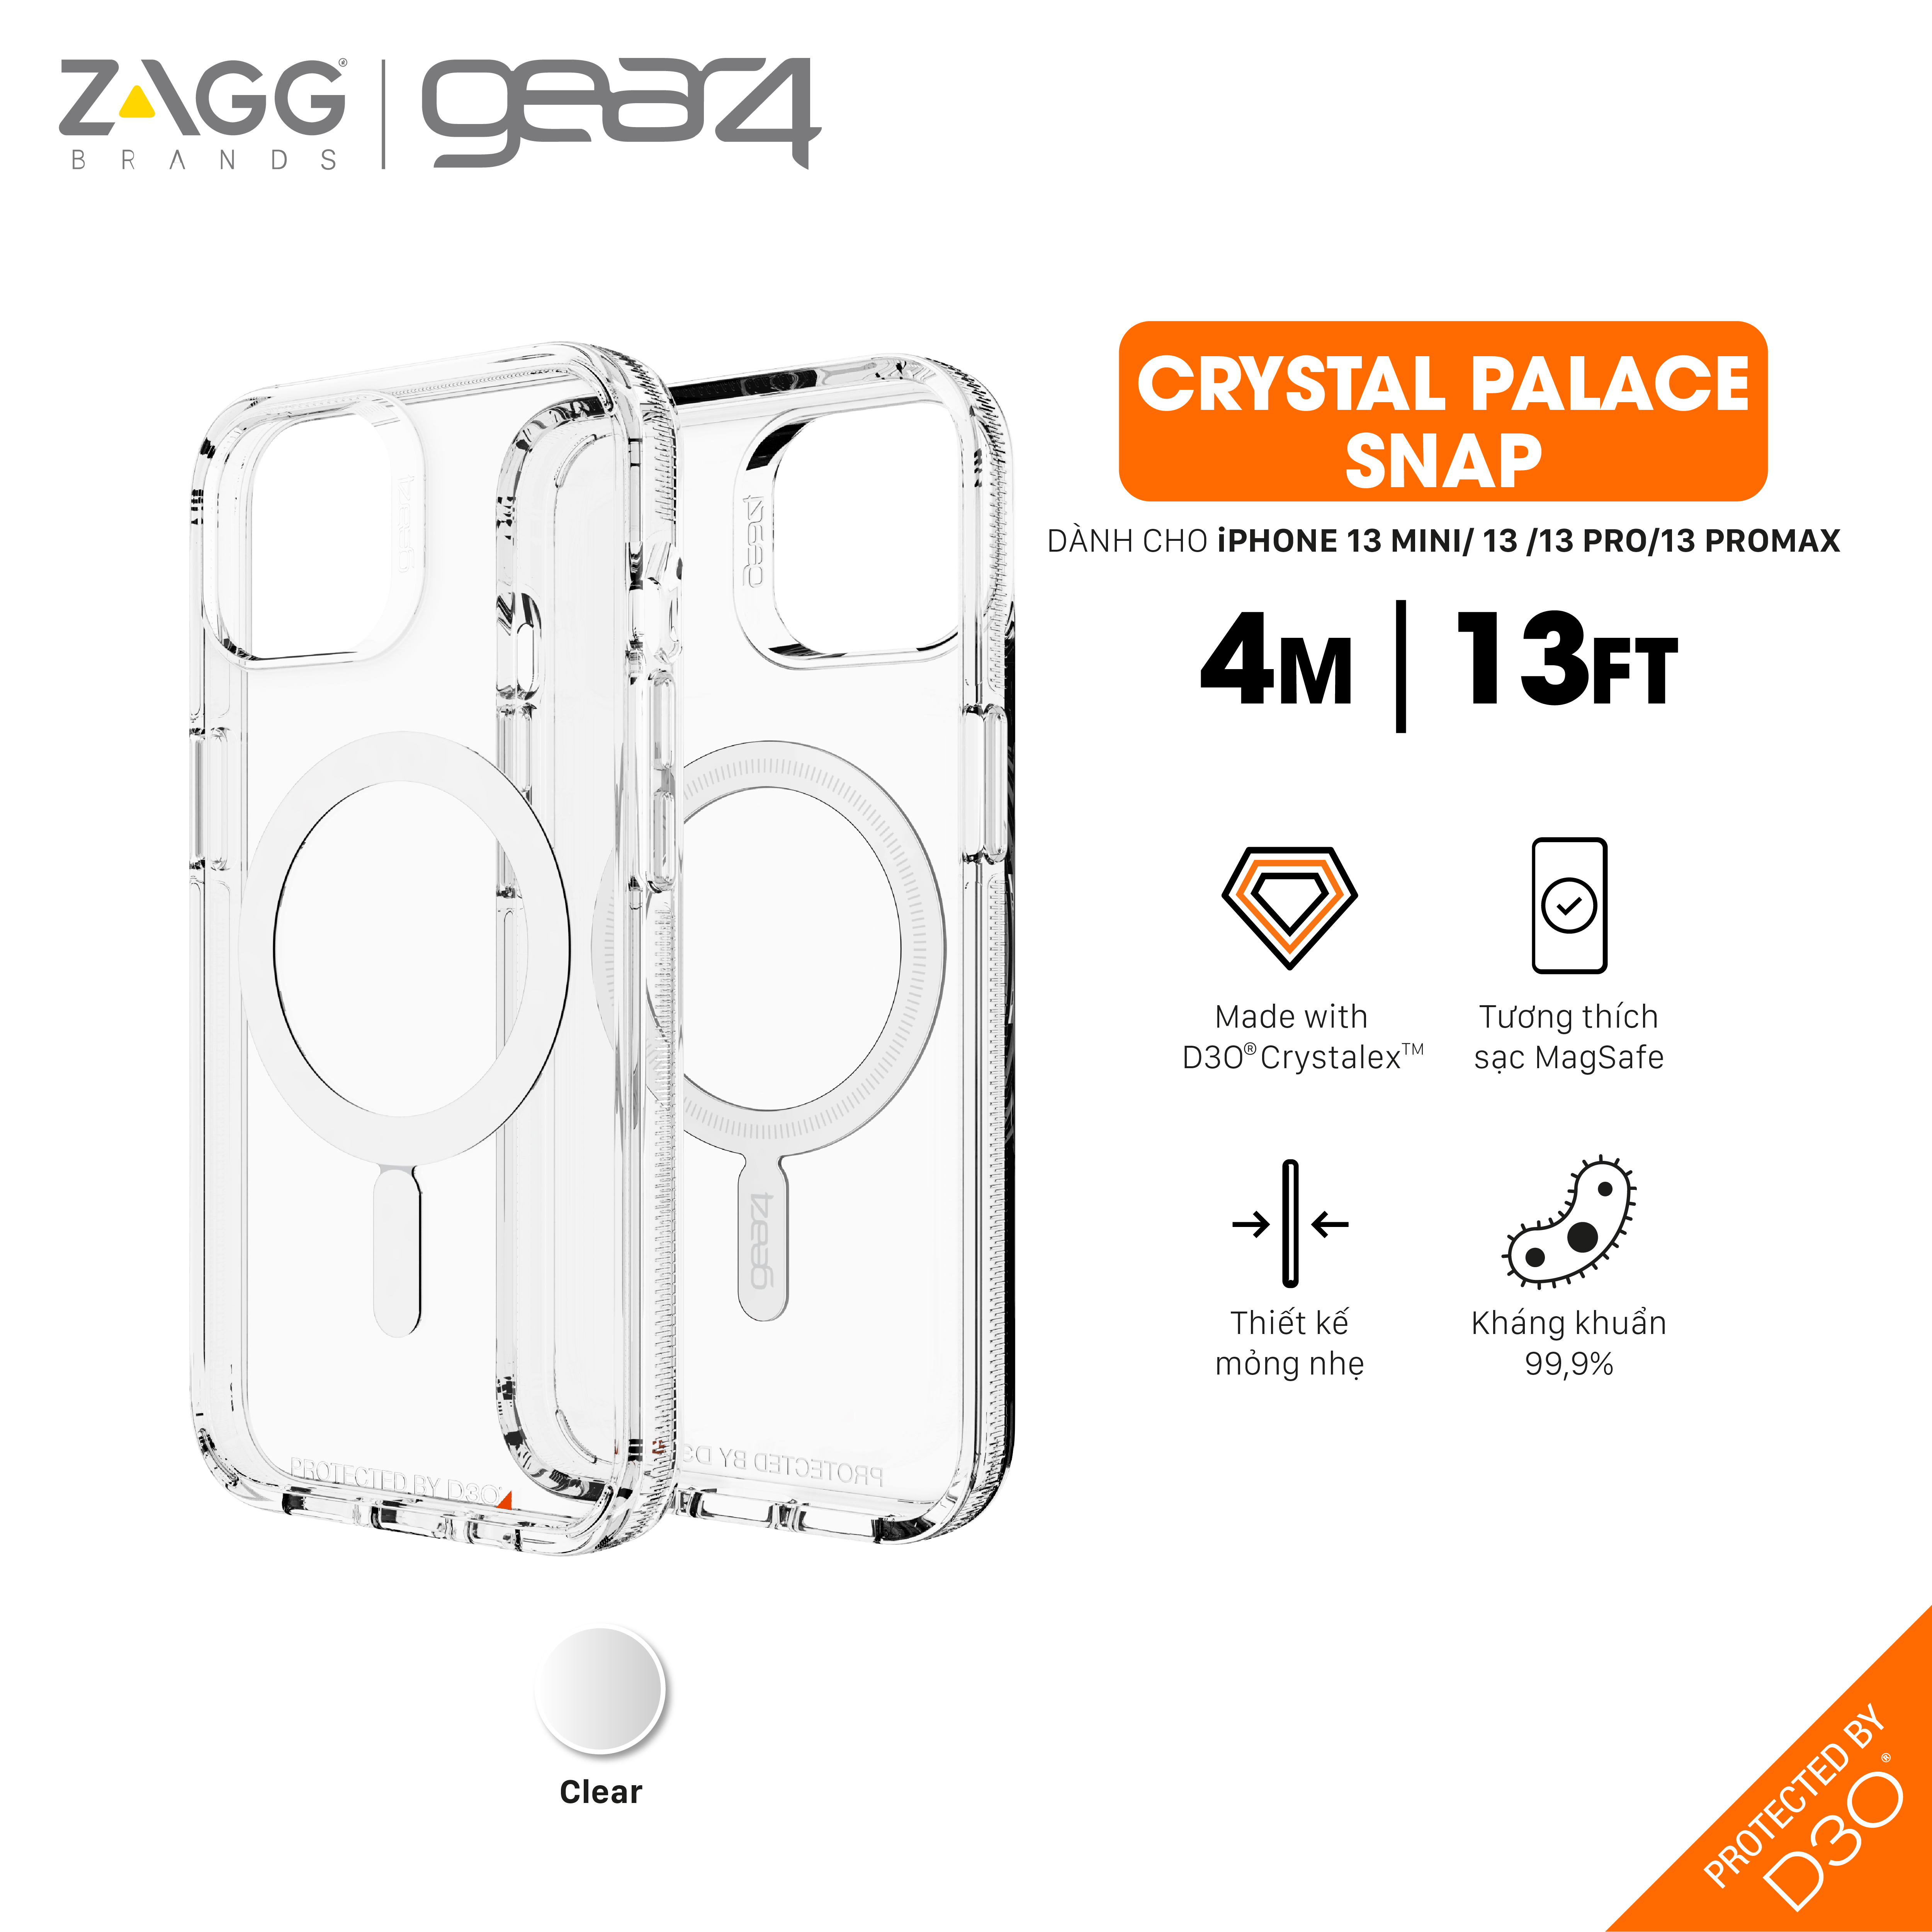 Ốp lưng chống sốc Gear4 D3O Crystal Palace Snap 4m hỗ trợ sạc Magsafe cho iPhone 13 series - Hàng chính hãng - iPhone 13 Pro